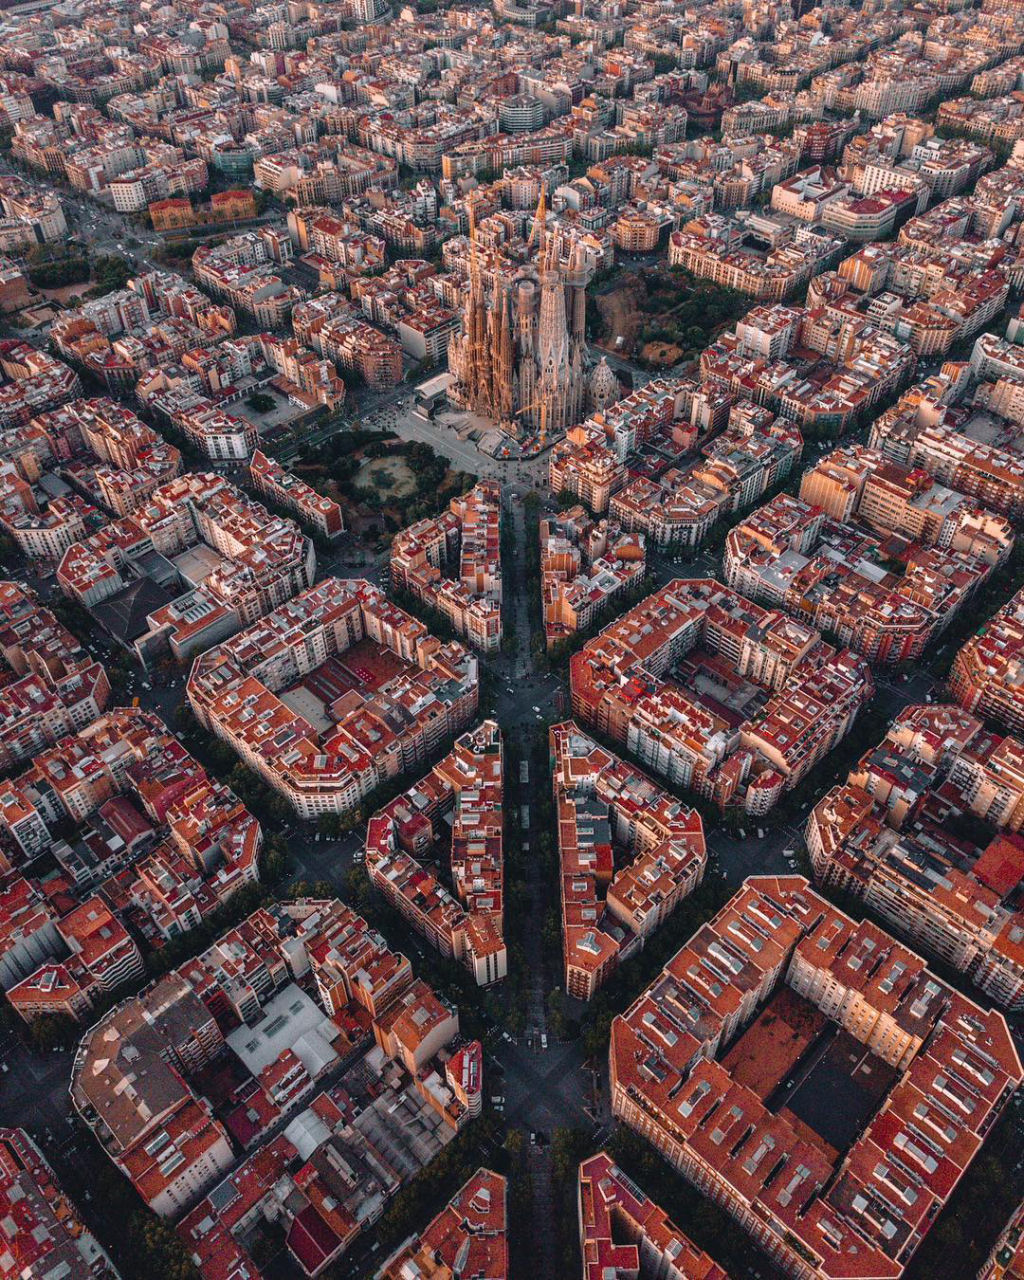 Barcelona geométrica: as fotografias a vista de drone que recolhem a beleza da cidade 01